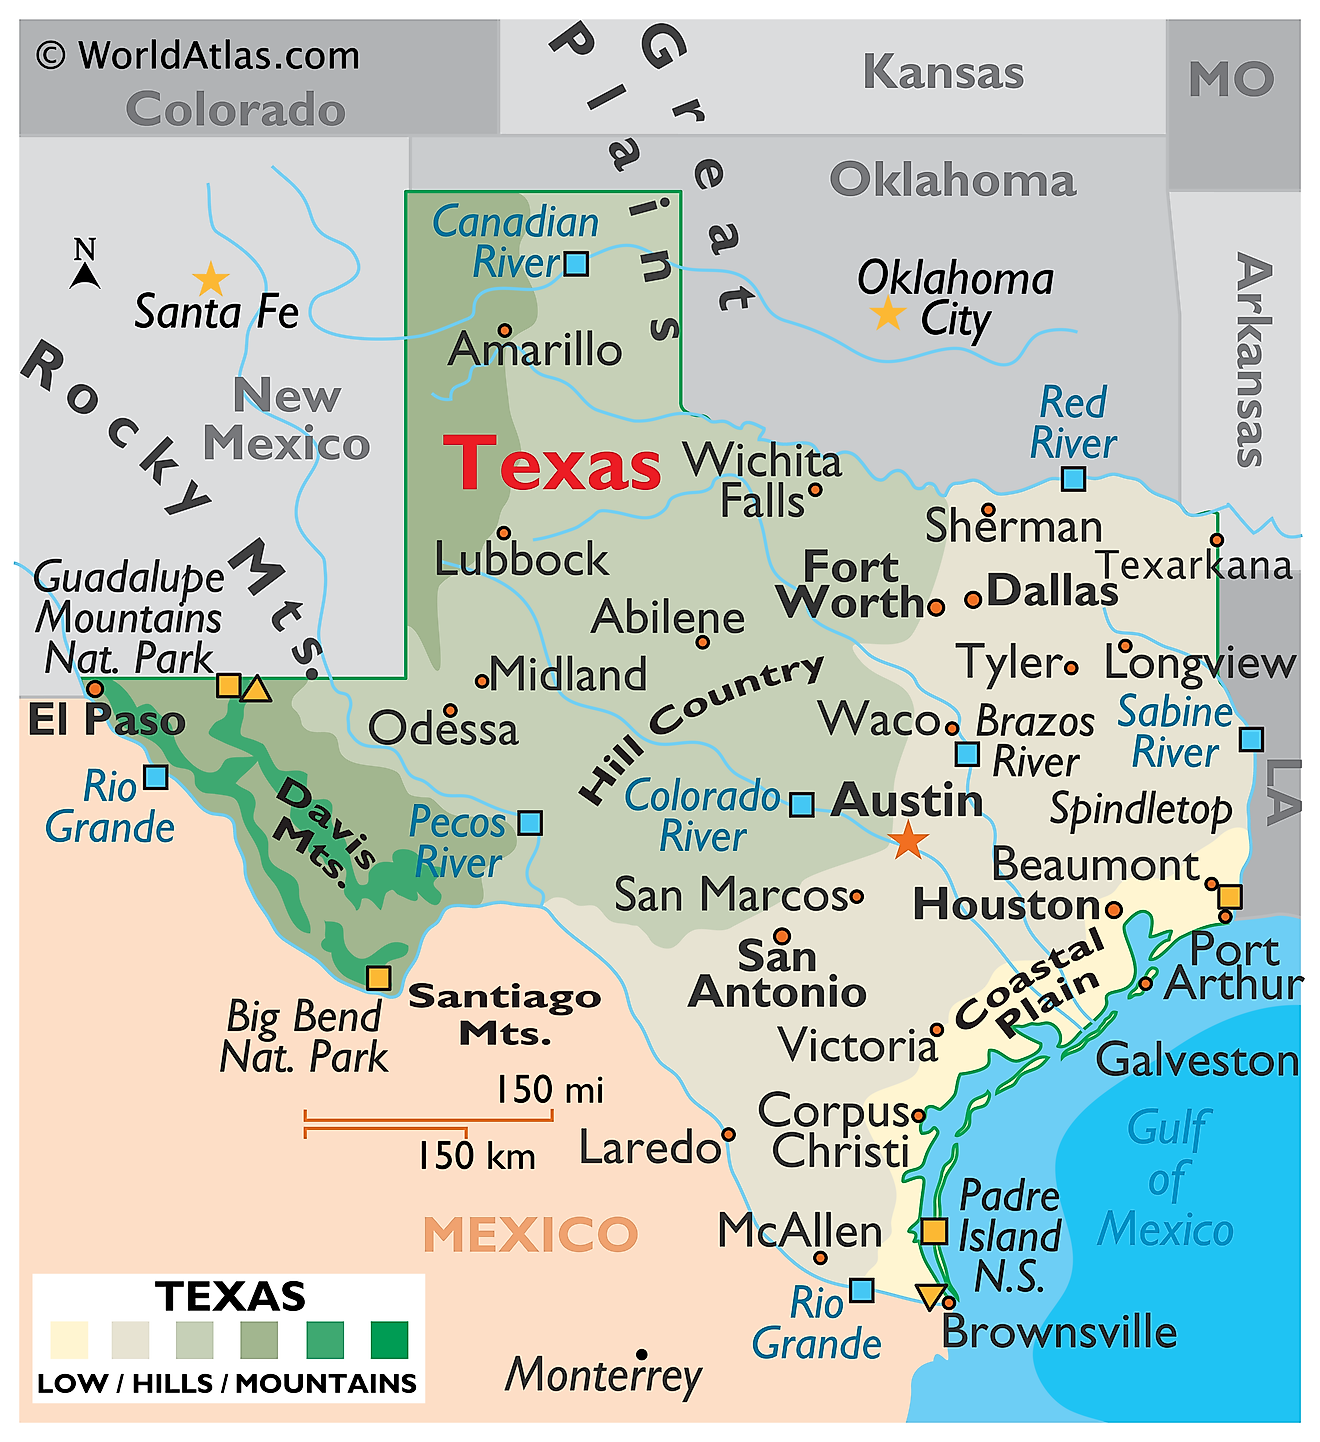 Mapa Físico de Texas. Muestra las características físicas de Texas, incluidas sus cadenas montañosas y los principales ríos.